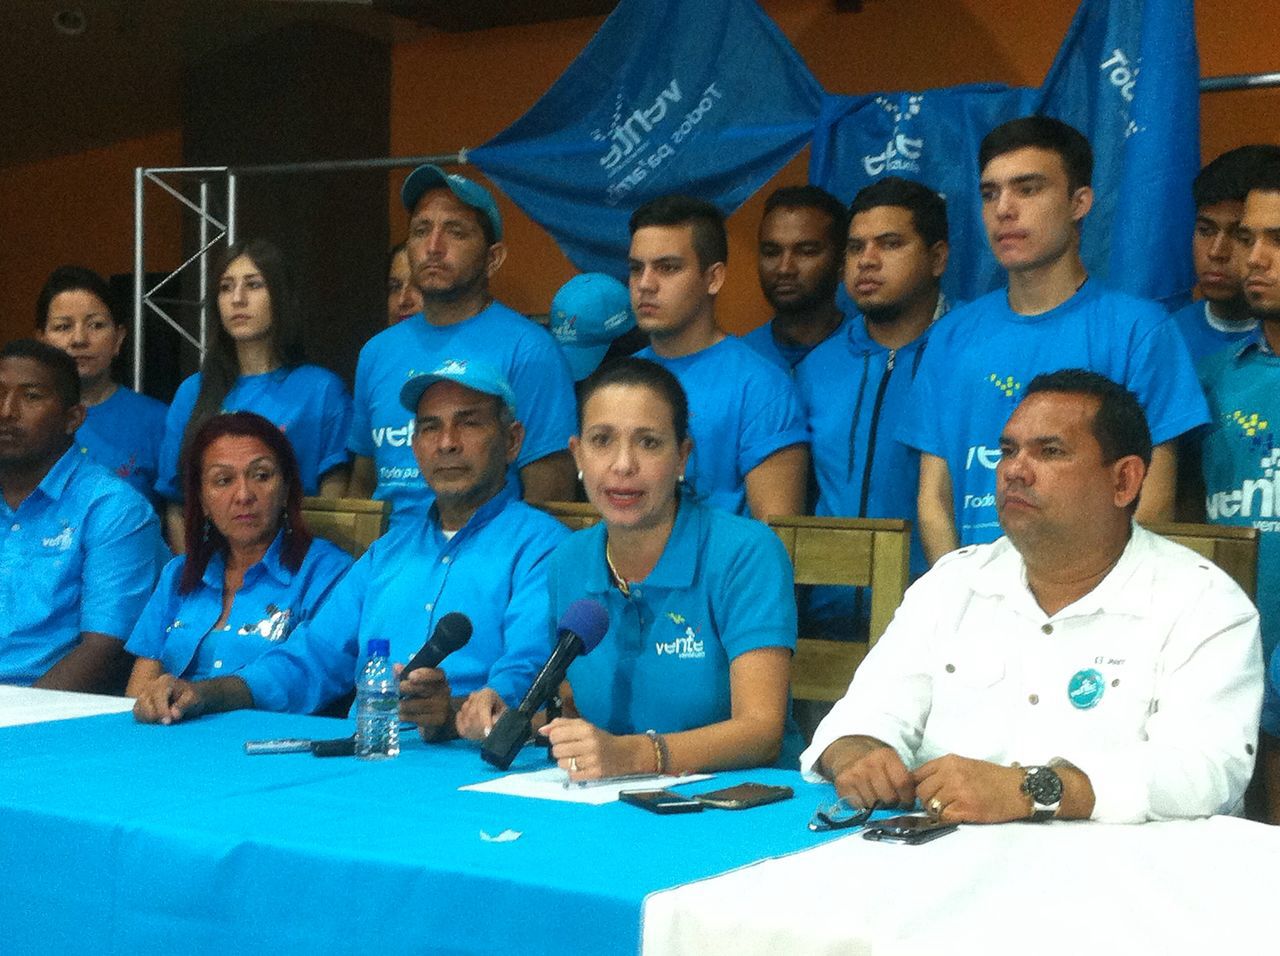 Dirigente de Vente Venezuela en Bolívar denuncia nueva masacre de mineros en El Callao